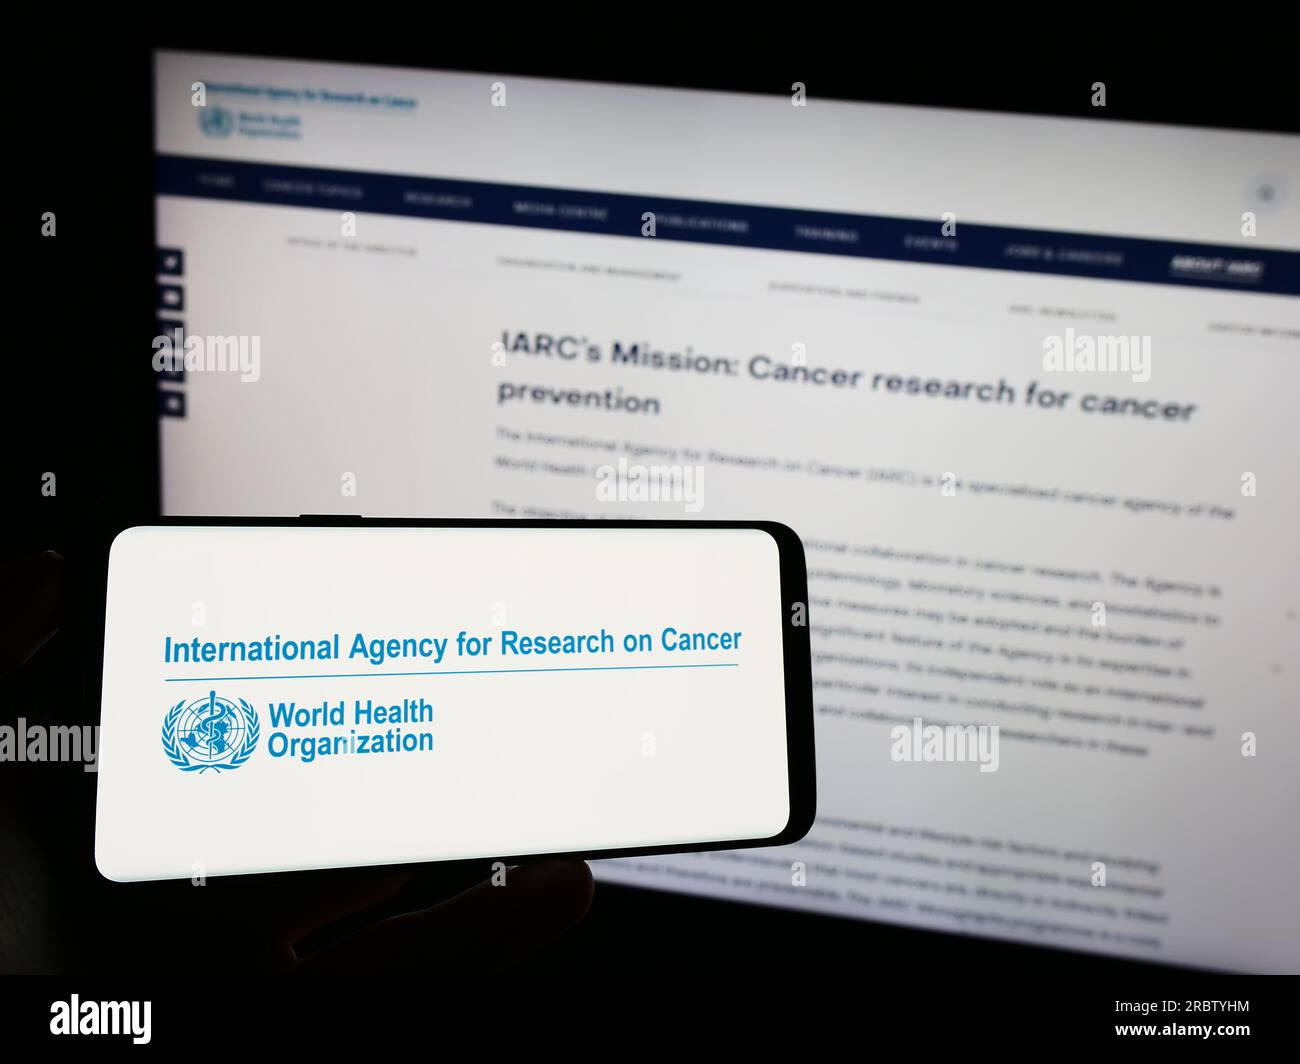 Persona che possiede un telefono cellulare con il logo dell'Agenzia internazionale per la ricerca sul cancro (IARC) sullo schermo davanti alla pagina web. Concentrarsi sul display del telefono. Foto Stock